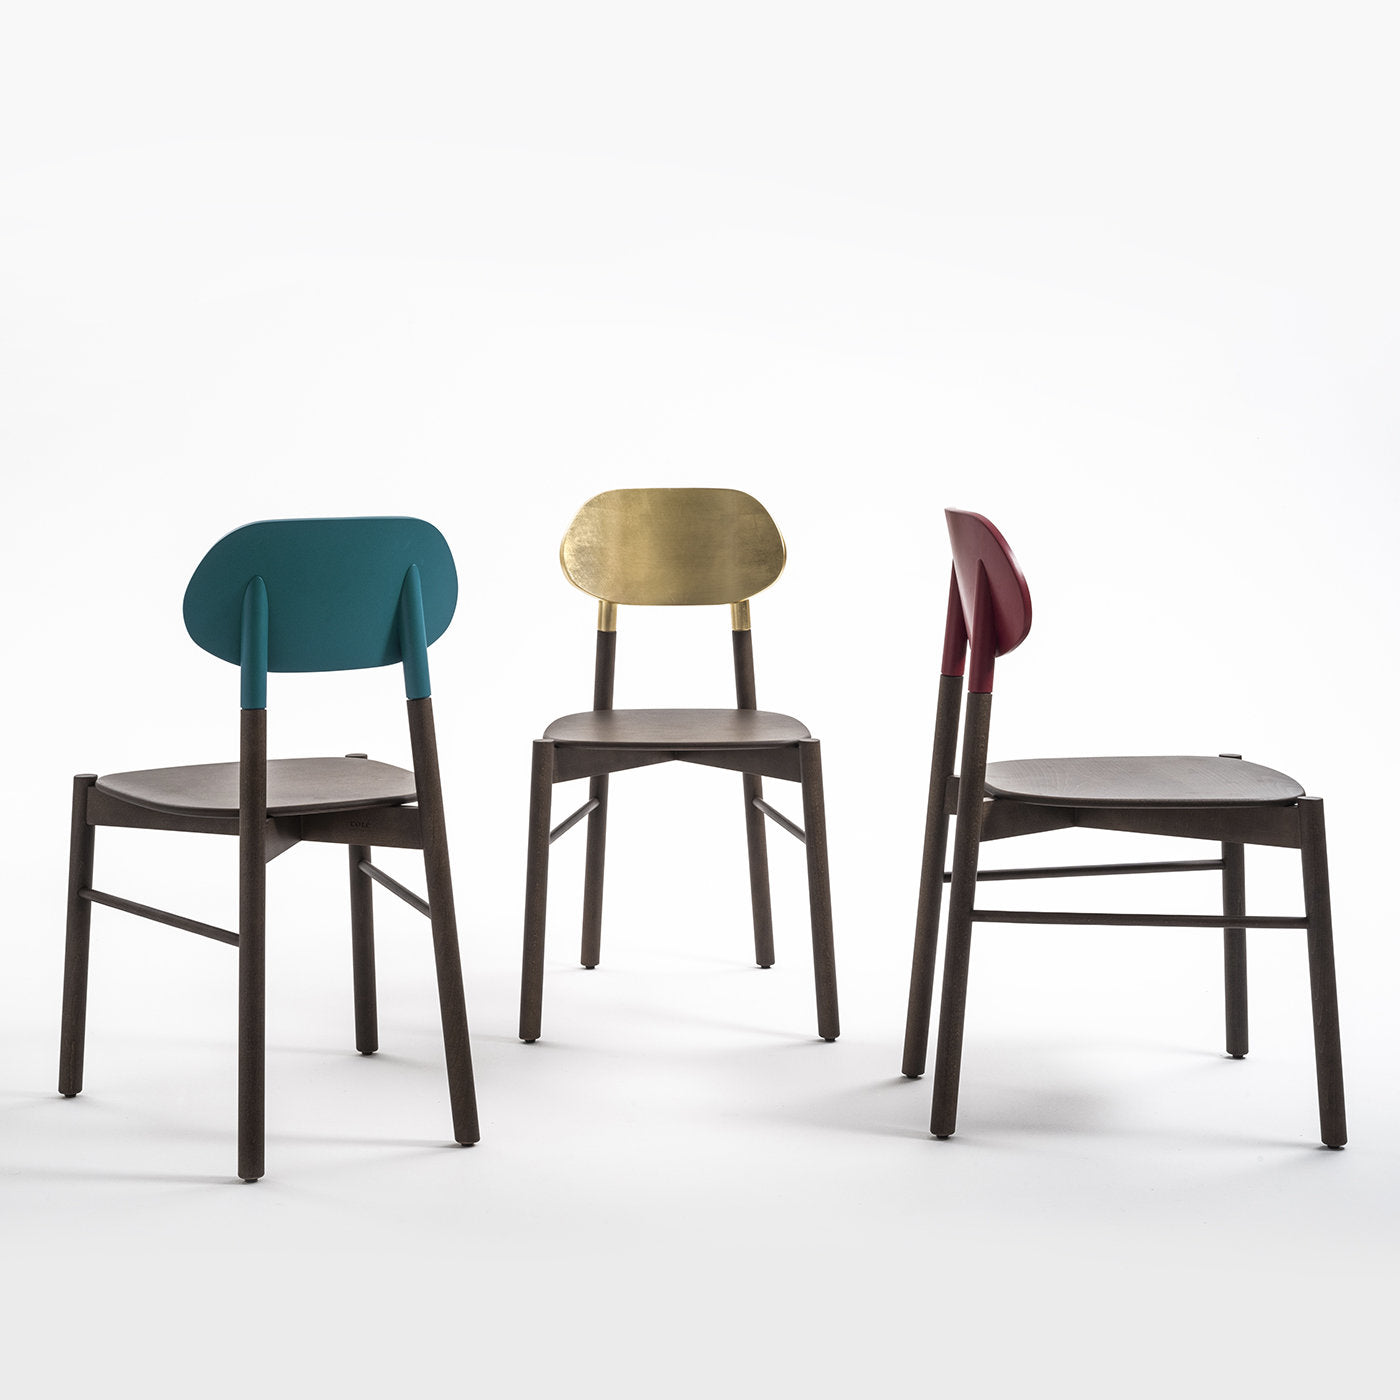 Bokken Chair in Green - Alternative view 1